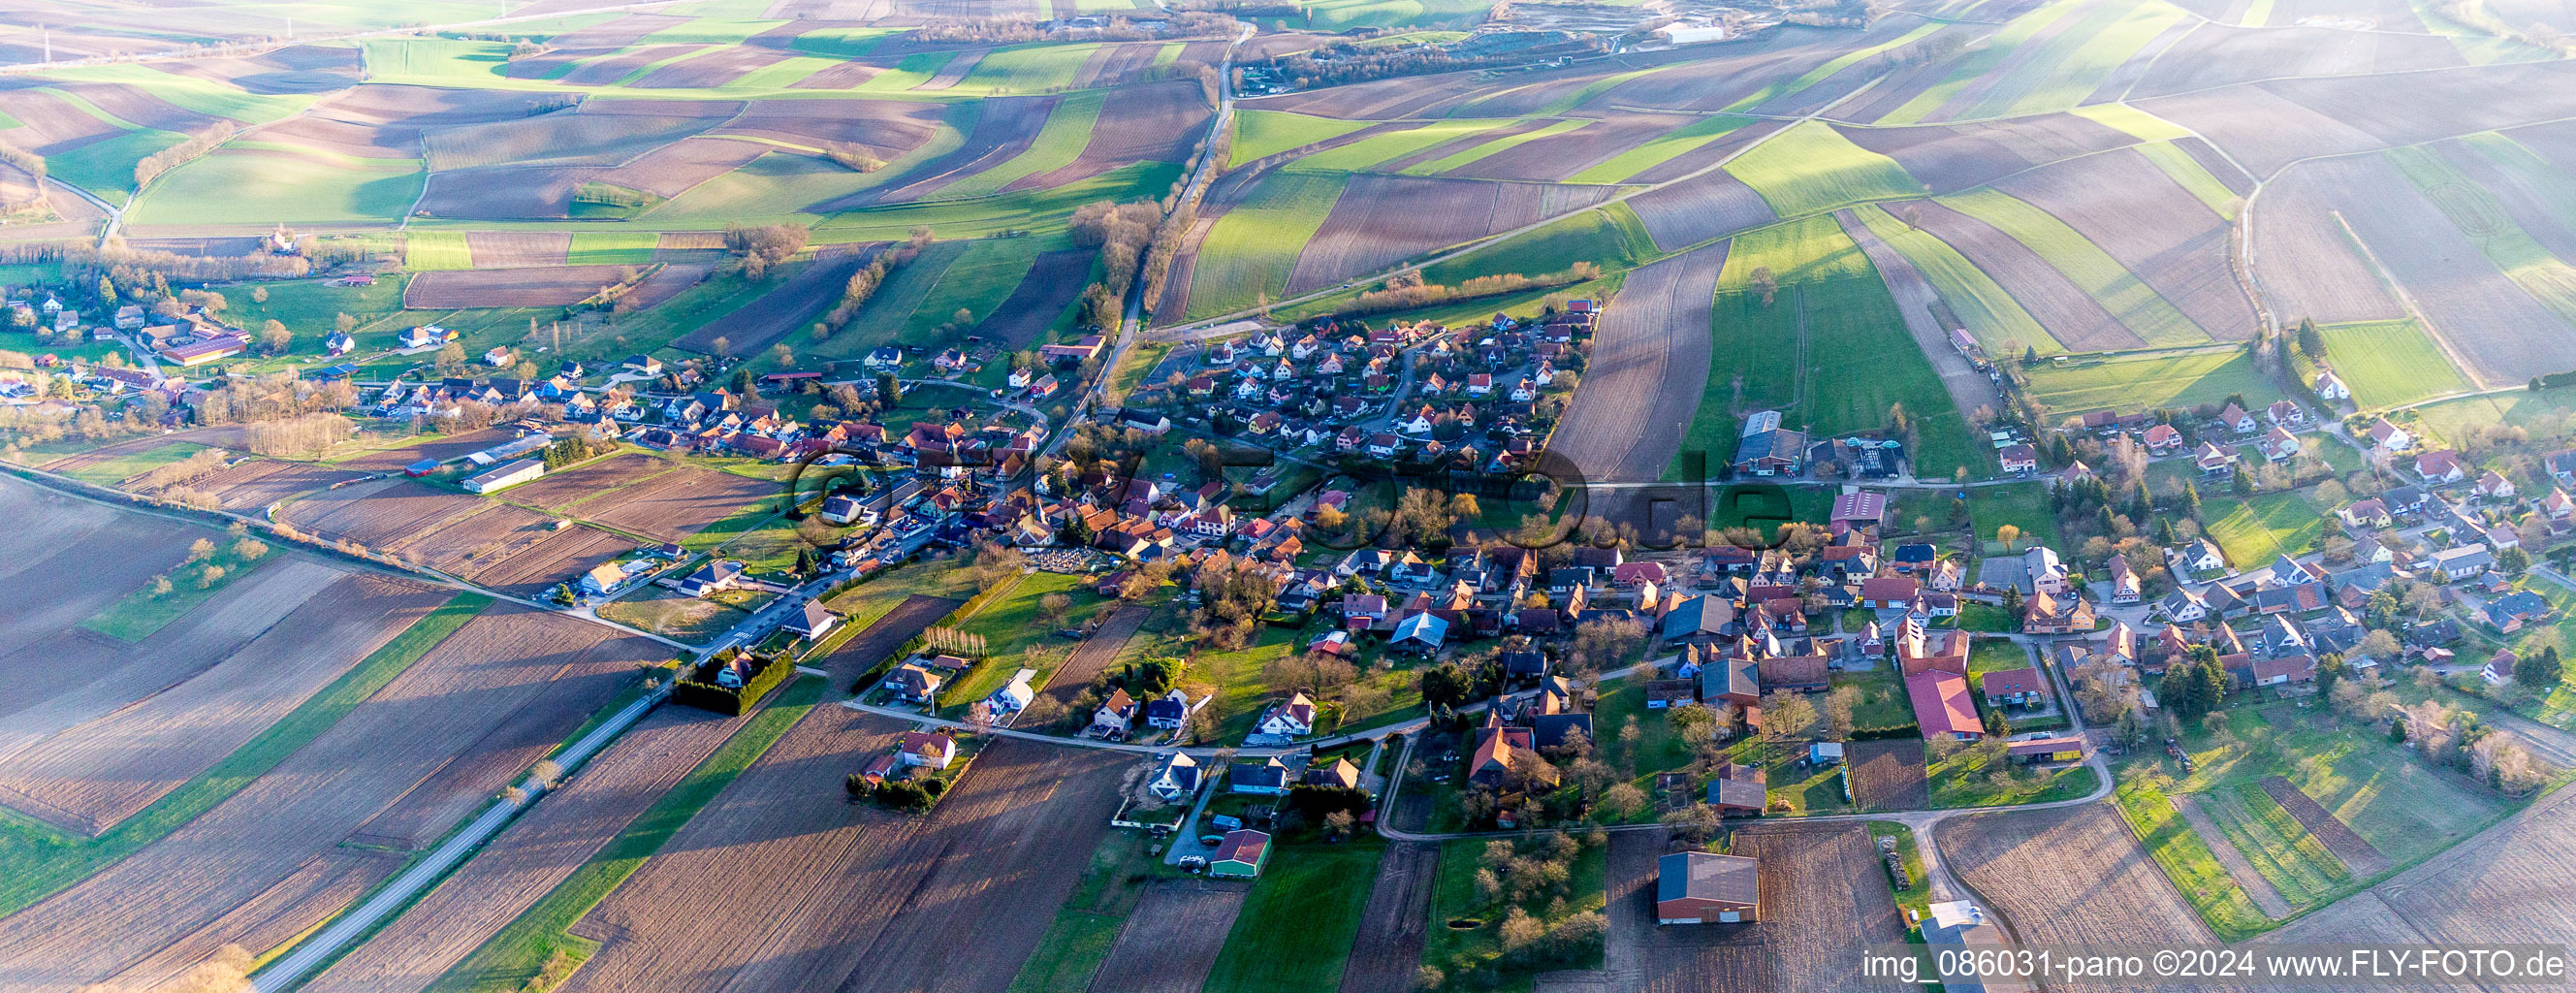 Dorf - Ansicht am Rande von landwirtschaftlichen Feldern und Nutzflächen in Wintzenbach in Grand Est im Bundesland Bas-Rhin, Frankreich